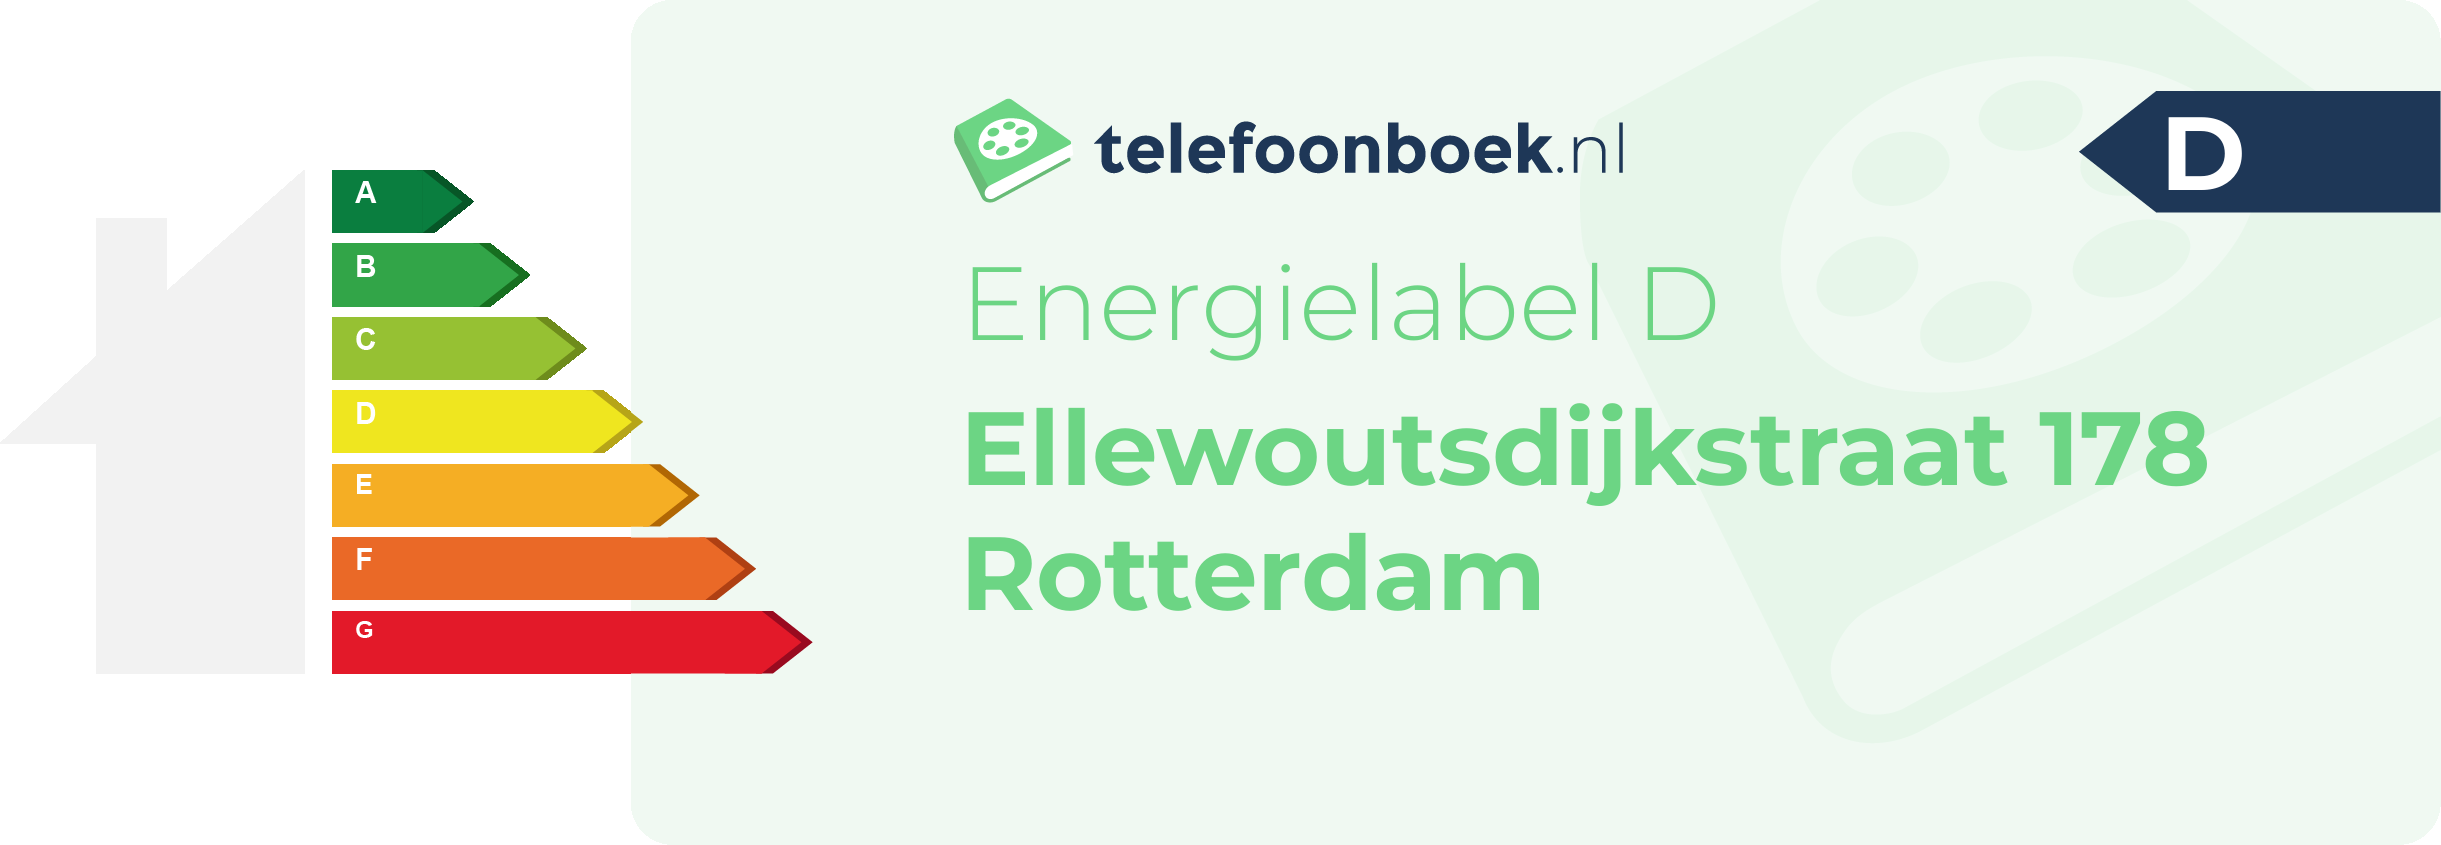 Energielabel Ellewoutsdijkstraat 178 Rotterdam